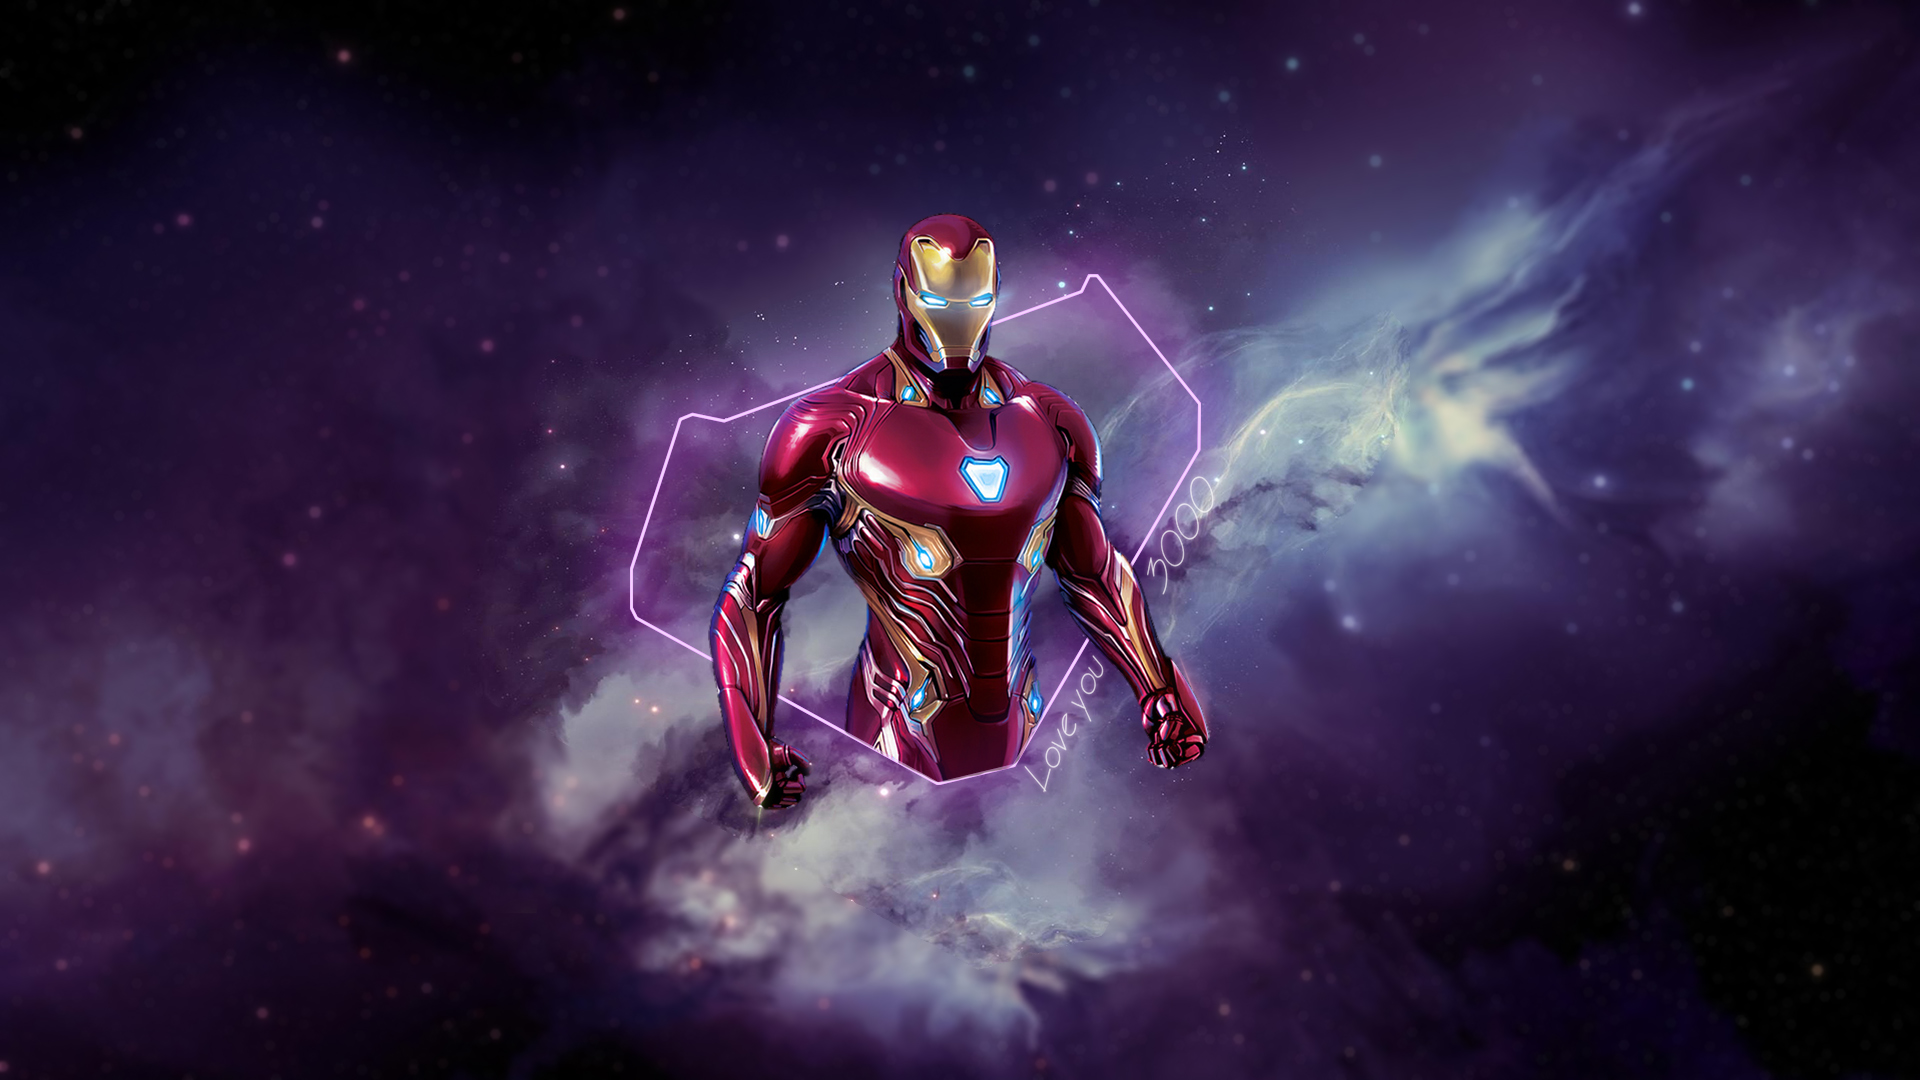 General 1920x1080 Iron Man Marvel Super Heroes Avengers Endgame Tony Stark digital art